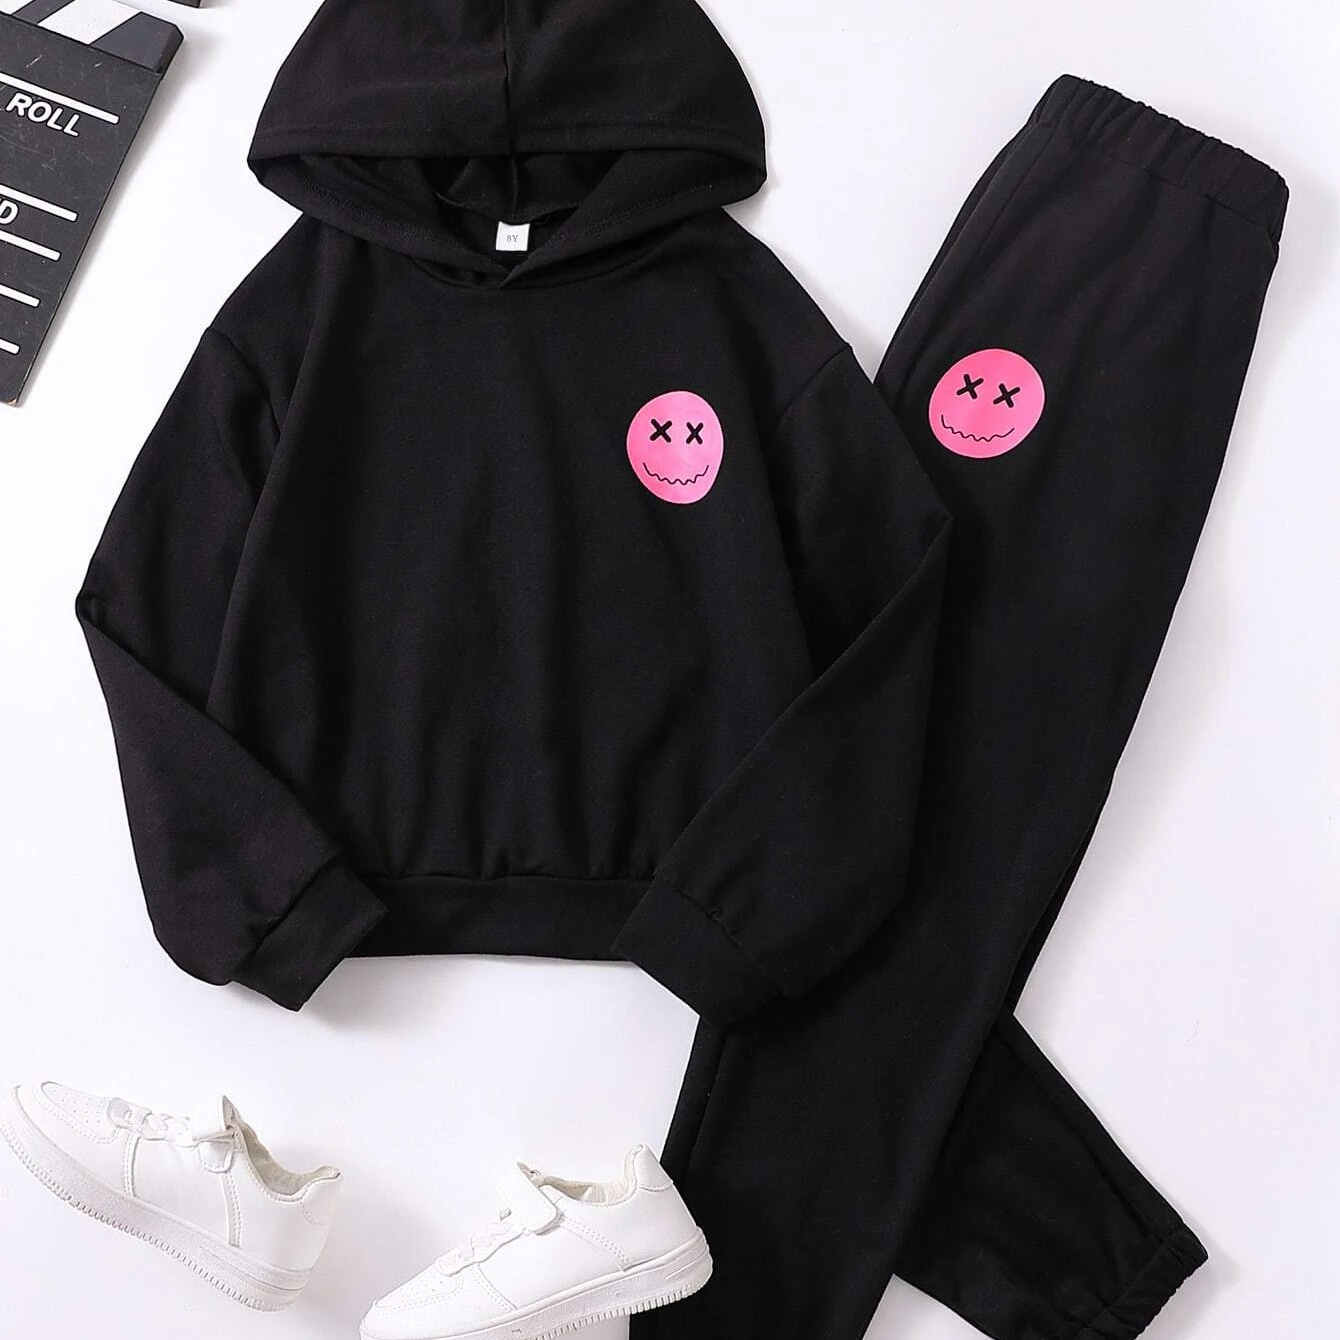 Series 3 Sweatpants - Black  Lazy cute outfits, Black hoodie, Sweatpants